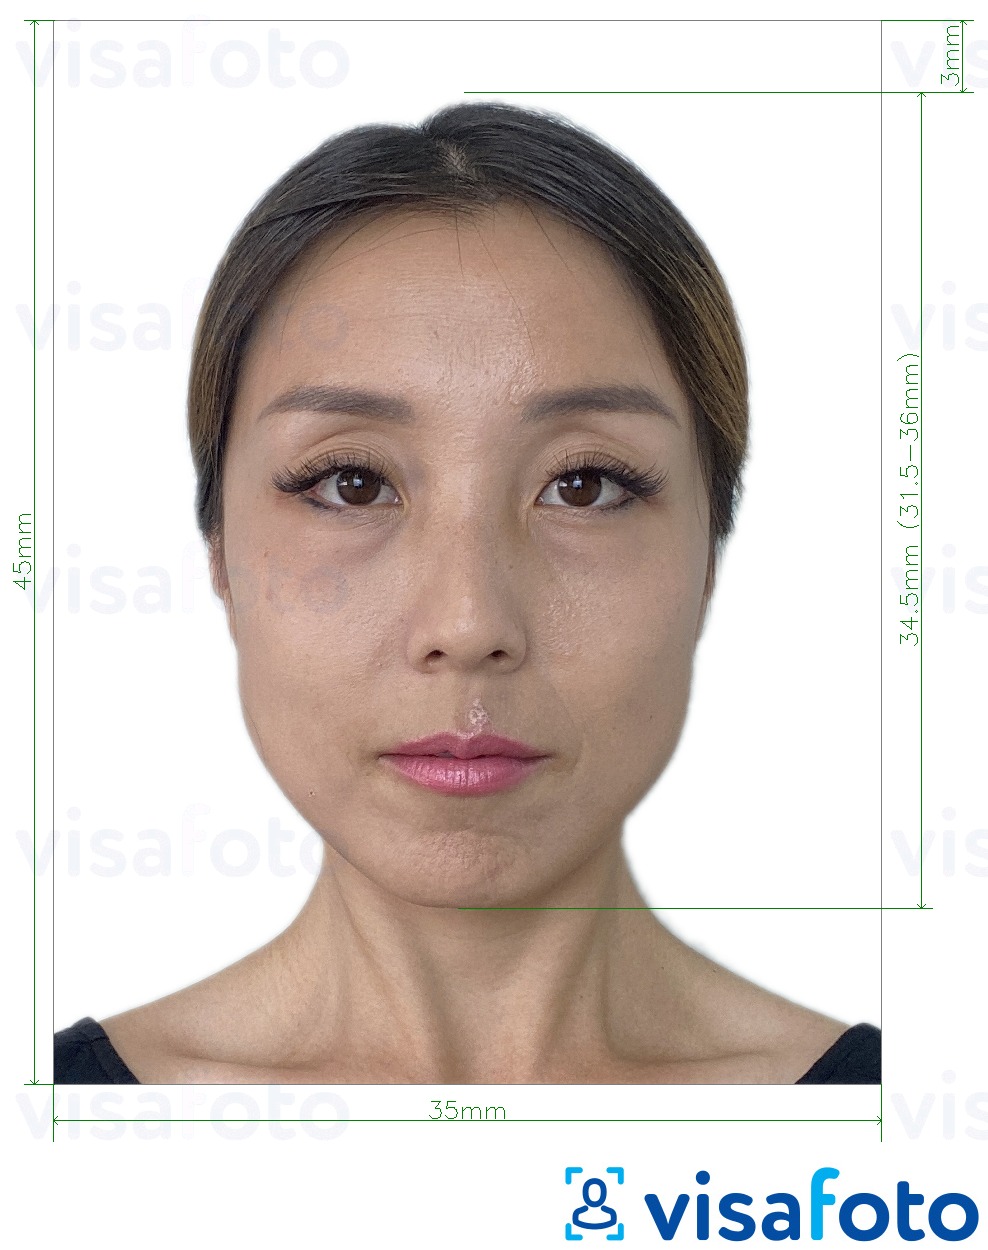 Exemplo de foto para Taiwan Visa 35x45 mm (3.5x4.5 cm) com especificação exata de dimensão